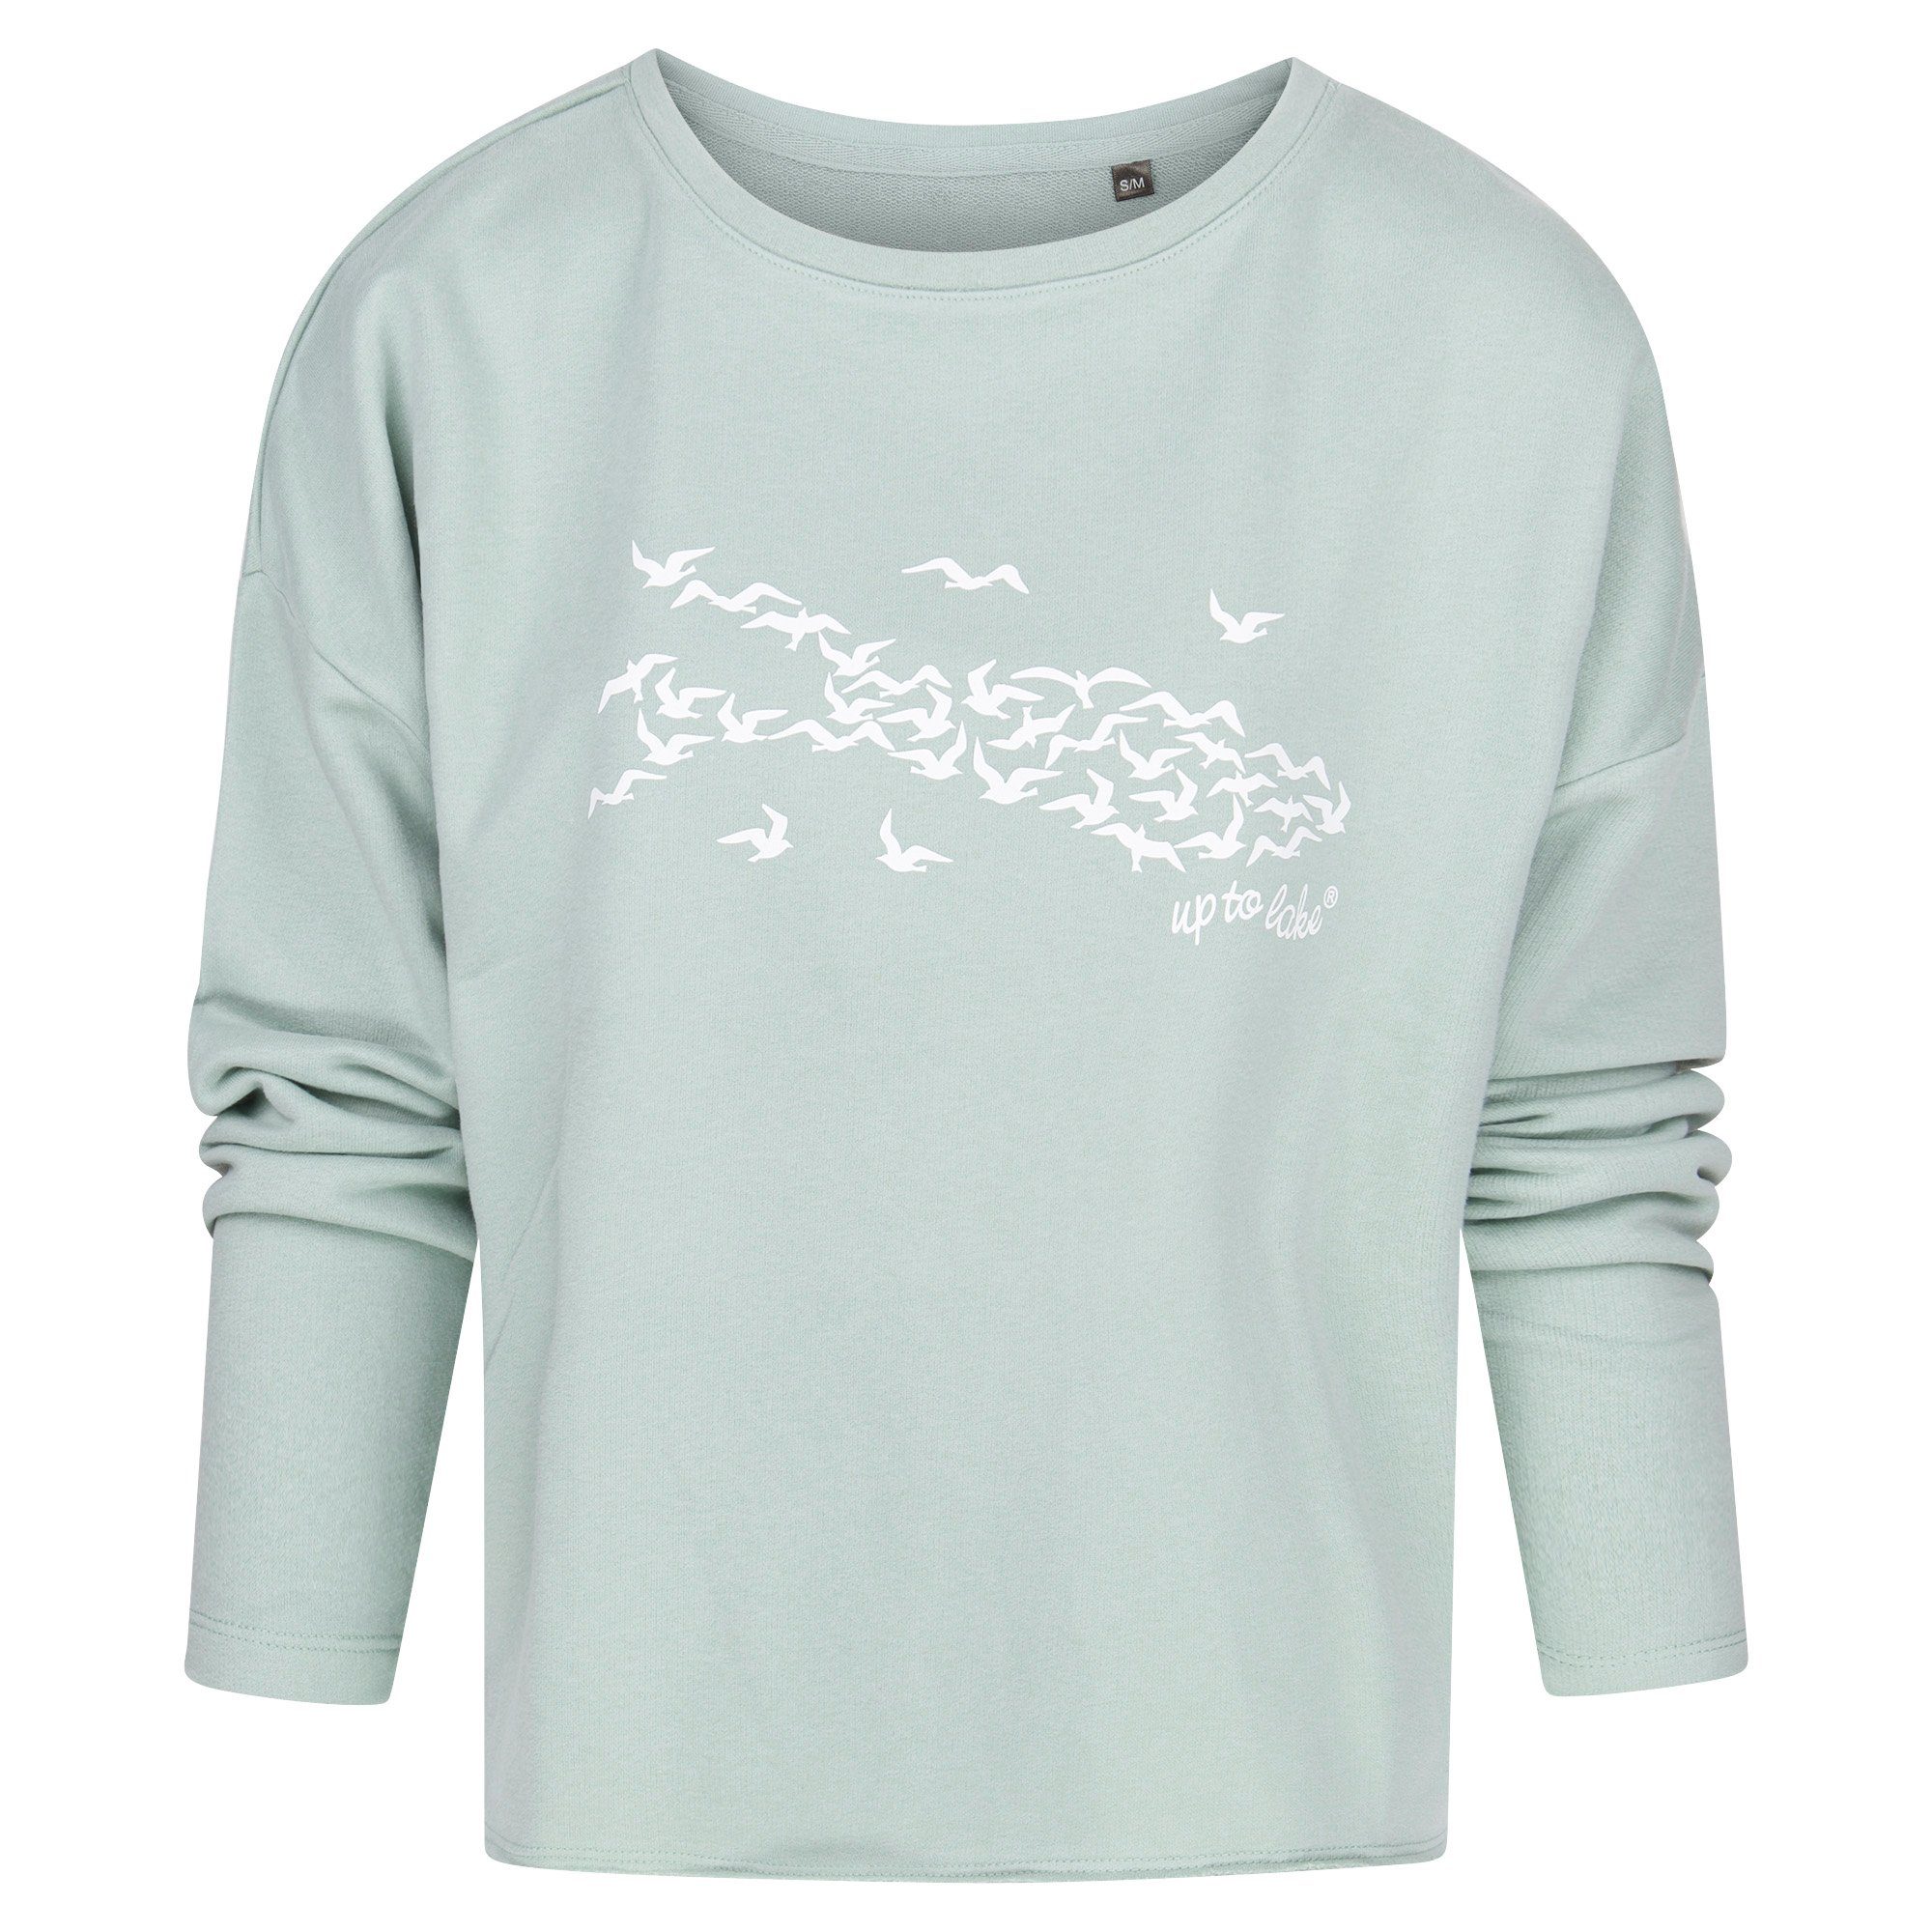 uptolake design Sweatshirt für Damen aus weichem Baumwollstoff mit "Mövensee-Bodensee" Design Sage/Weiß